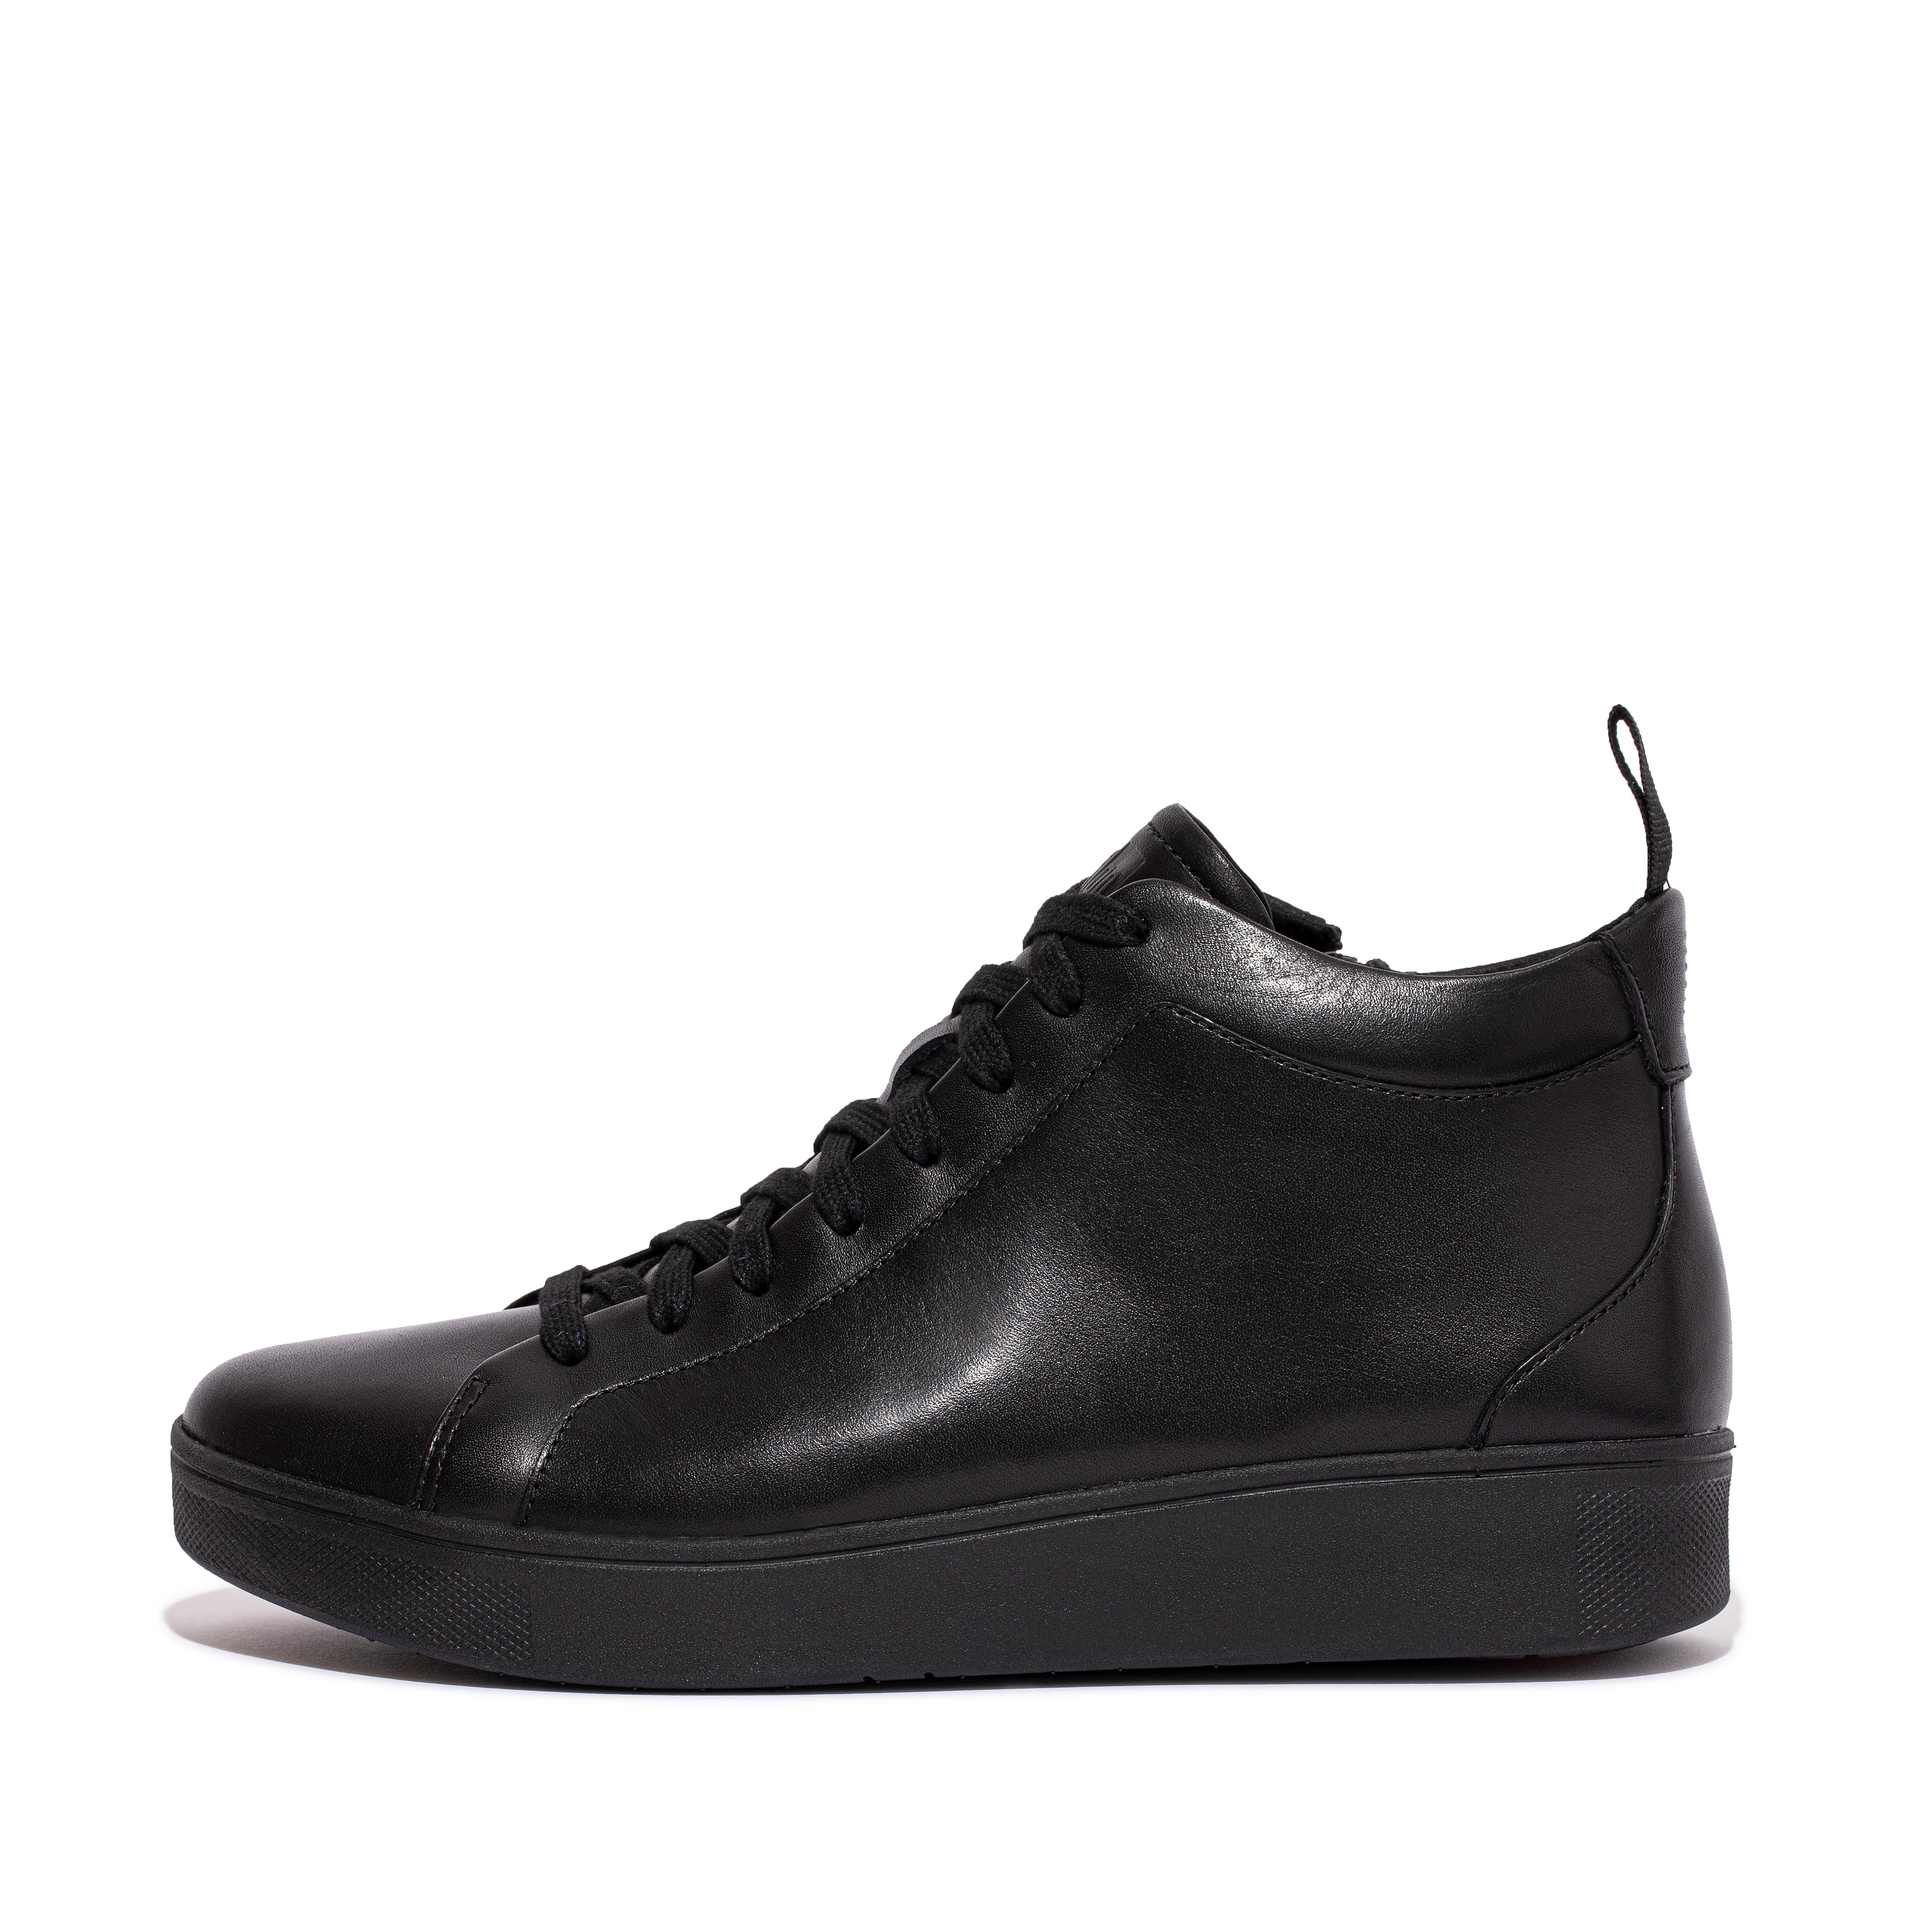 핏플랍 FitFlop RALLY Leather High-Top Sneakers,All Black